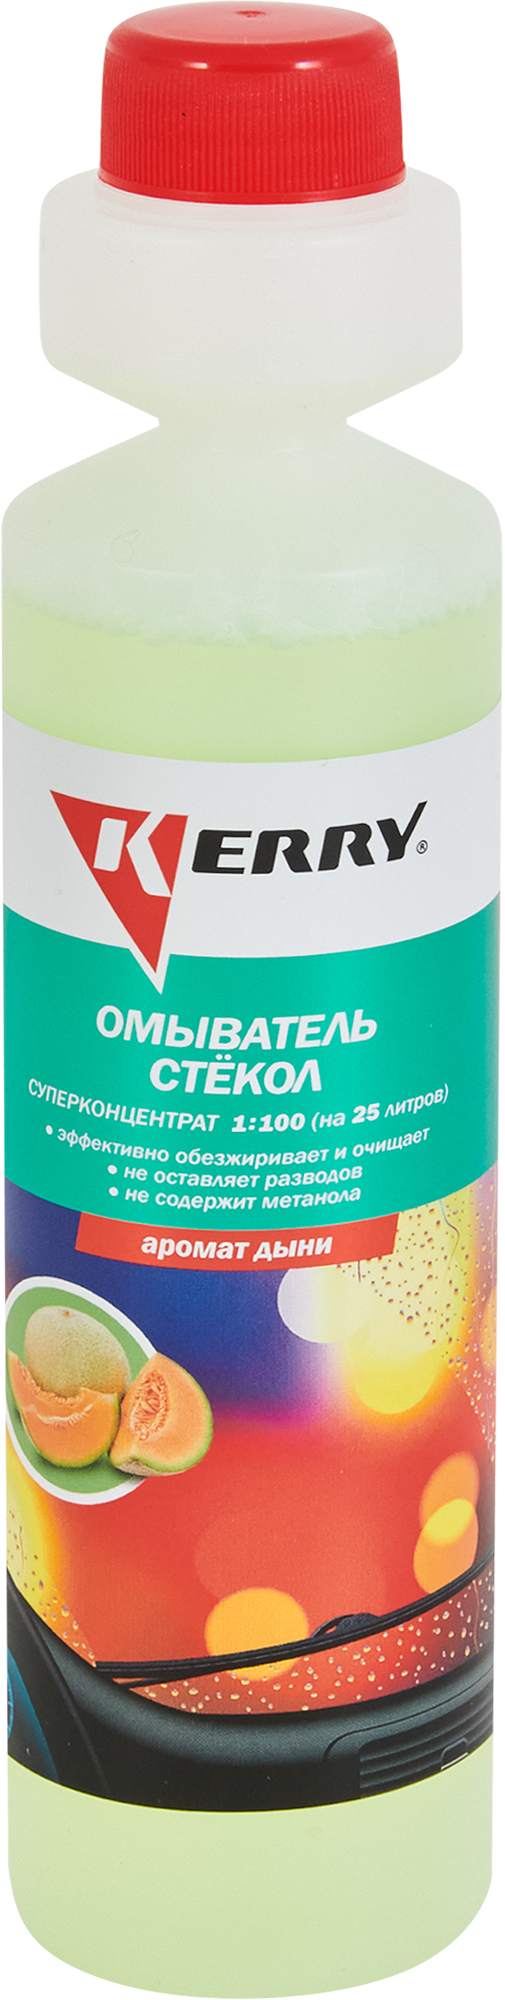 Стеклоомывающая жидкость  KR-333, 0.27 л ️  по цене 120 ₽/шт .